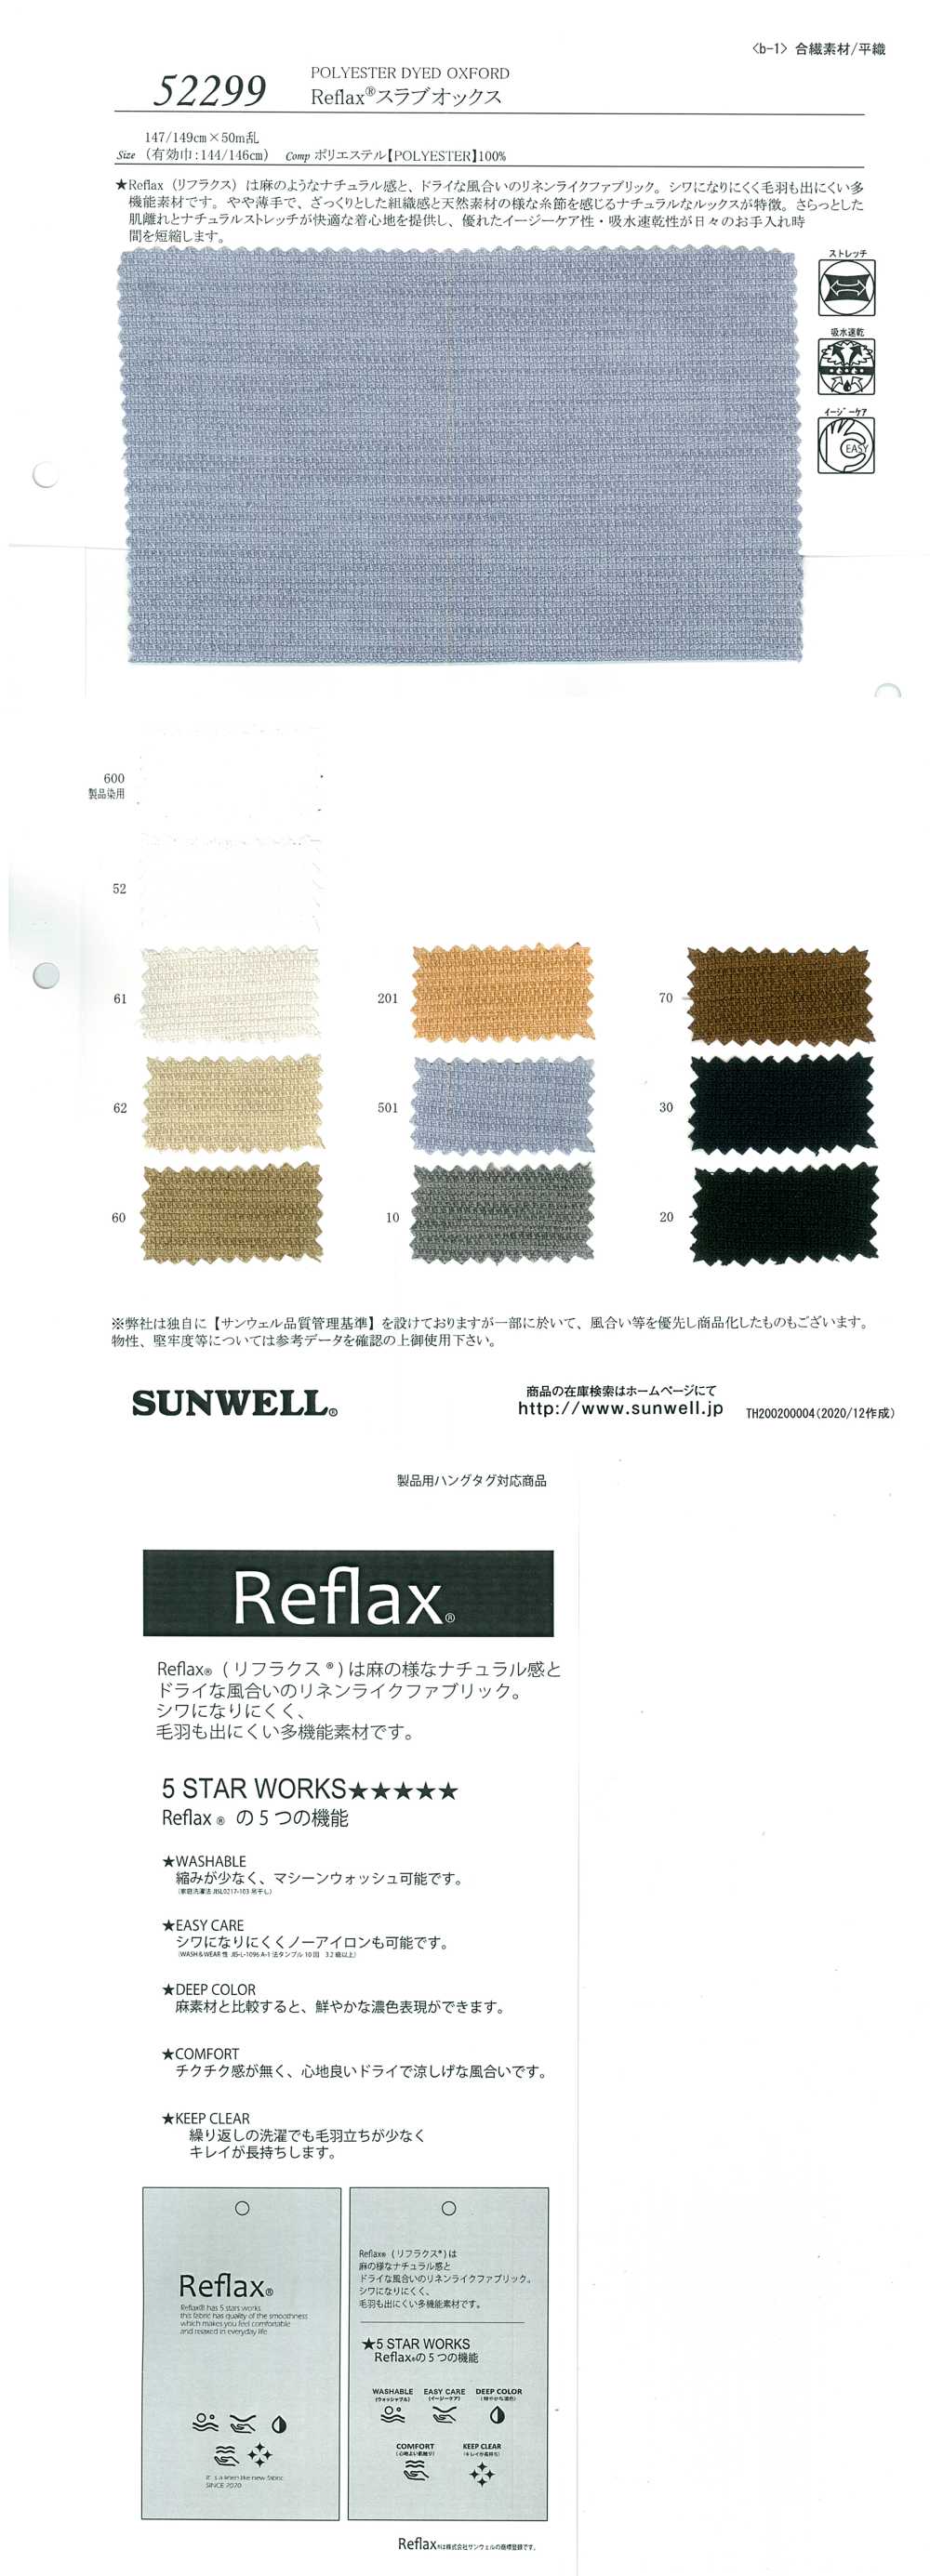 52299 Reflex(R) Laje Oxford[Têxtil / Tecido] SUNWELL